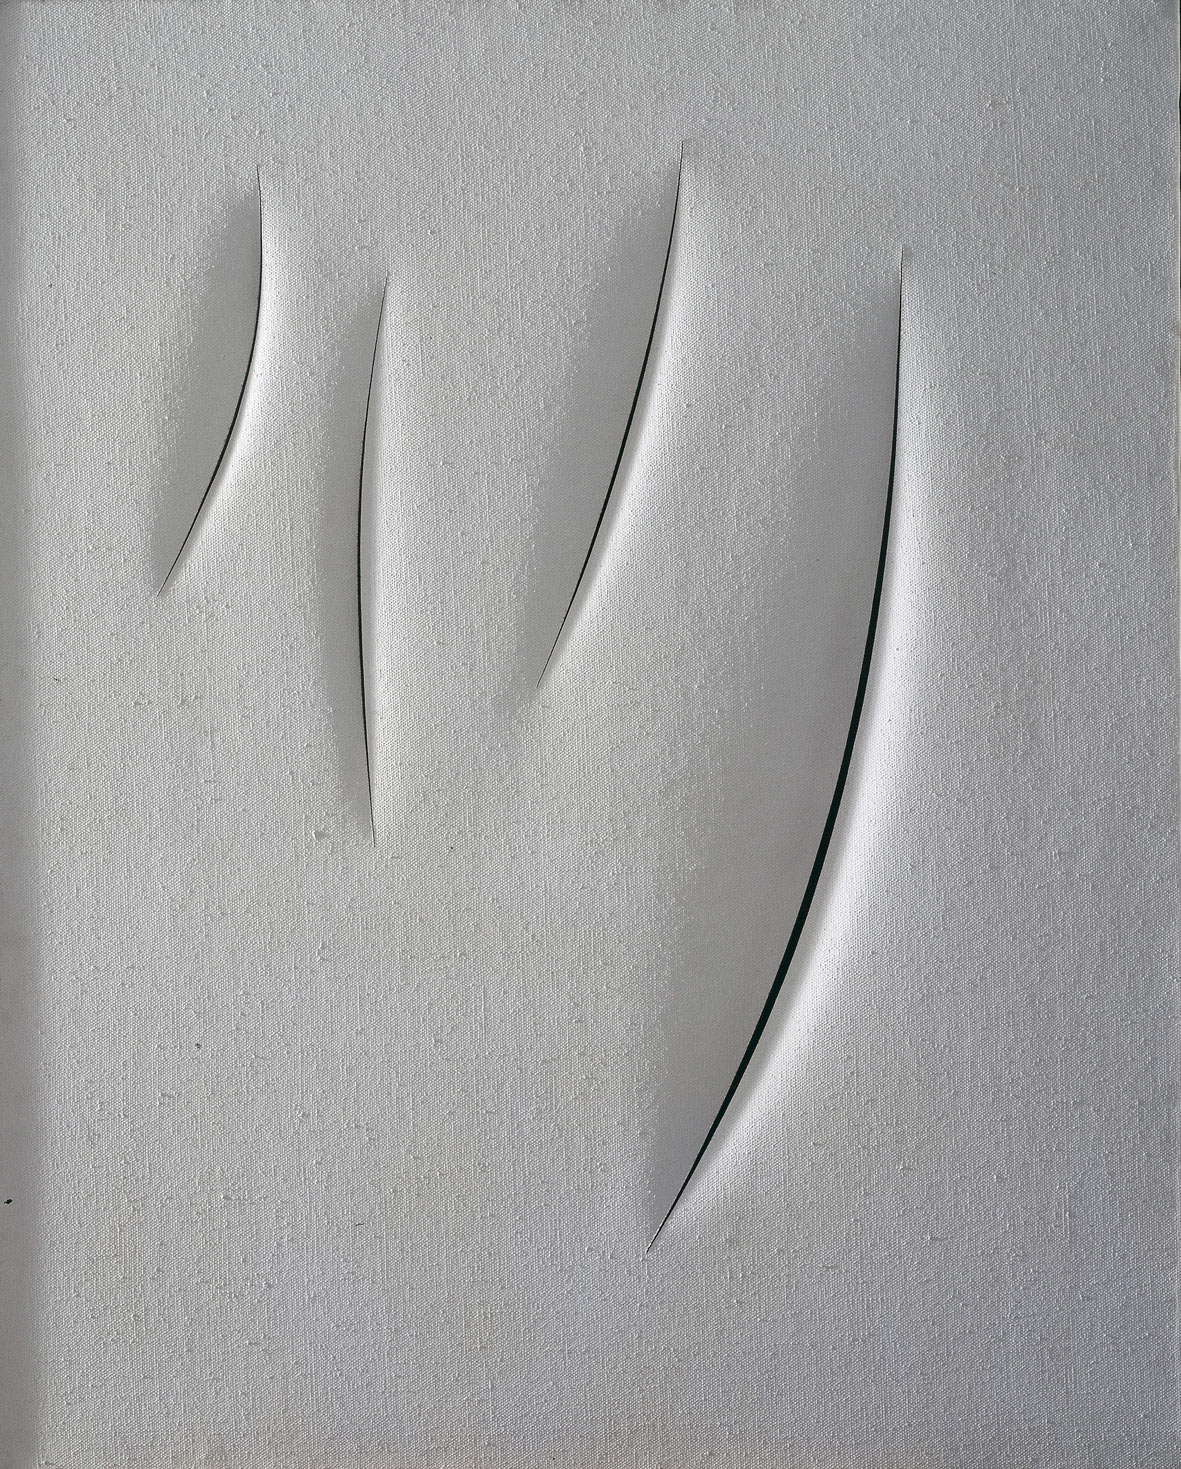 Lucio Fontana, Concetto spaziale. Attese (1961; idropittura su tela 100 x 84 cm; Parma, Collezione Barilla di Arte Moderna)
